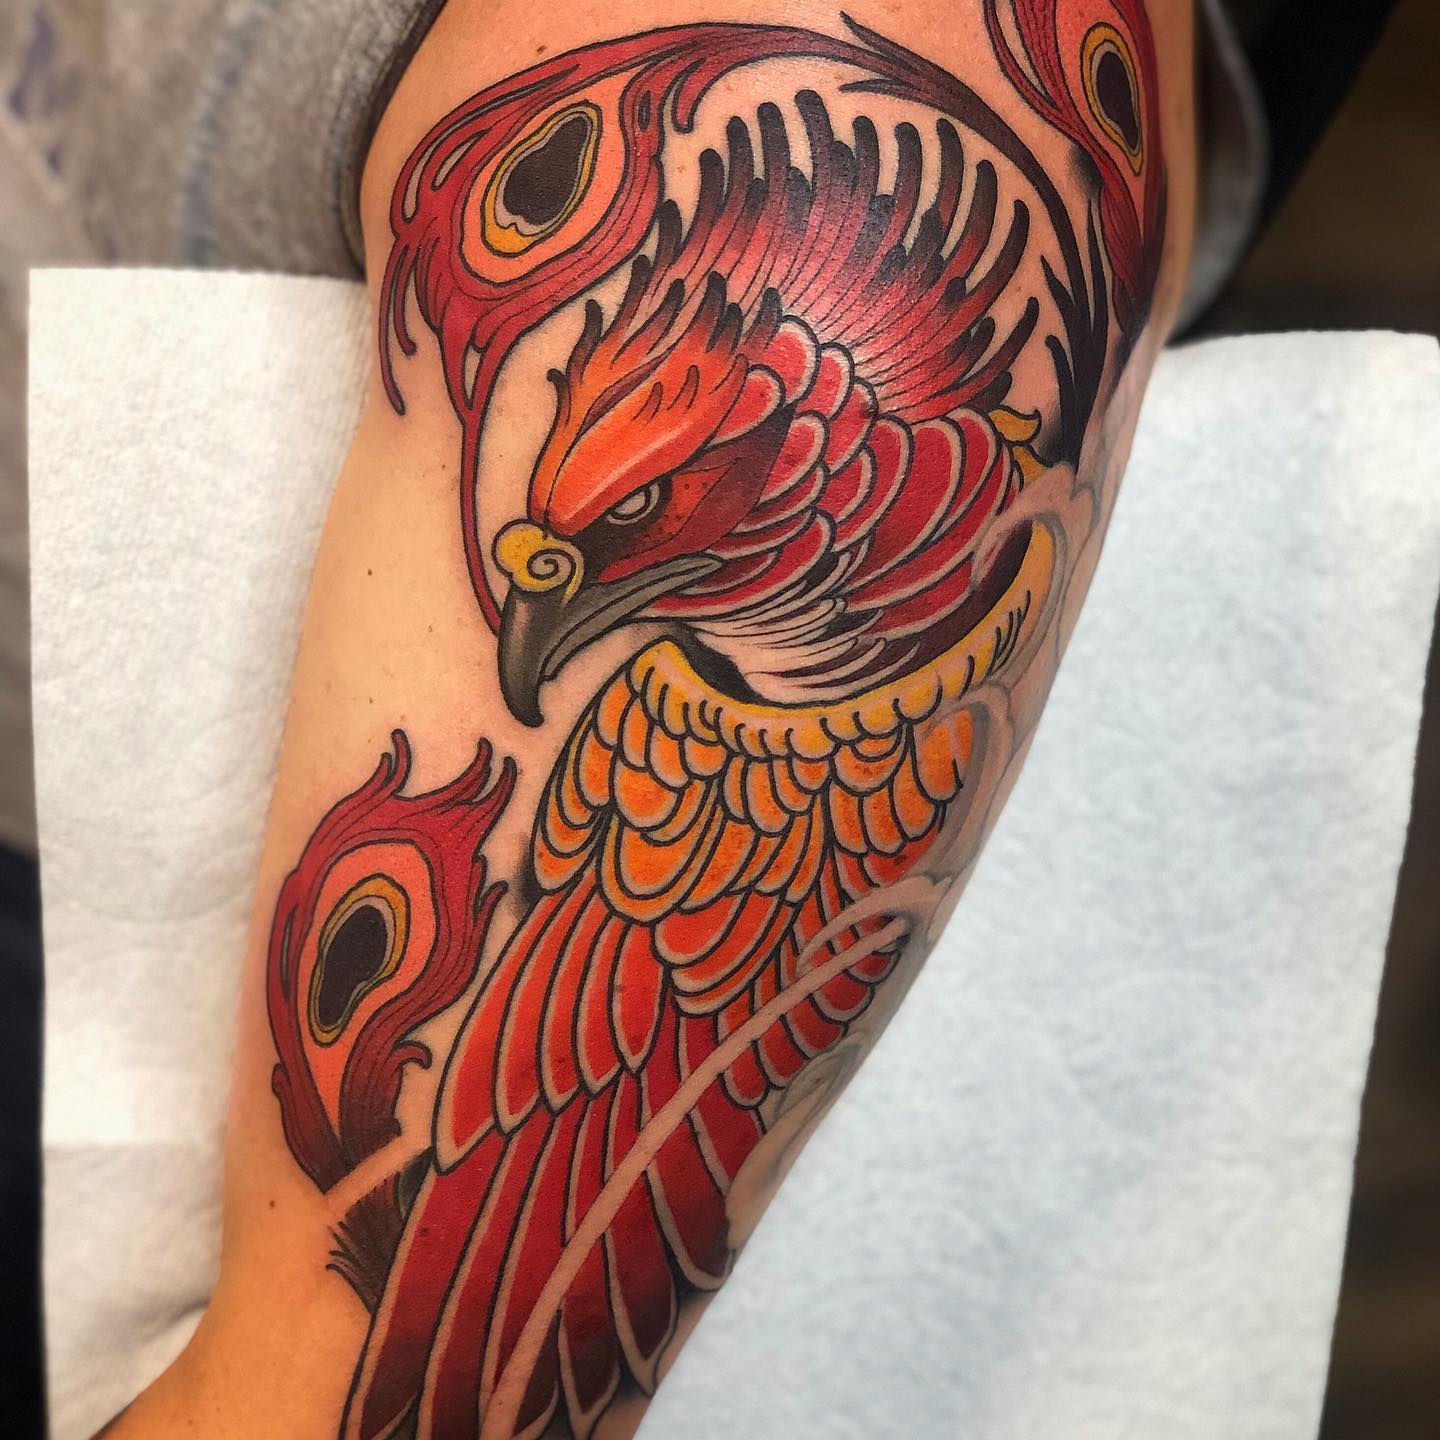 Firebird Phoenix Tattoo